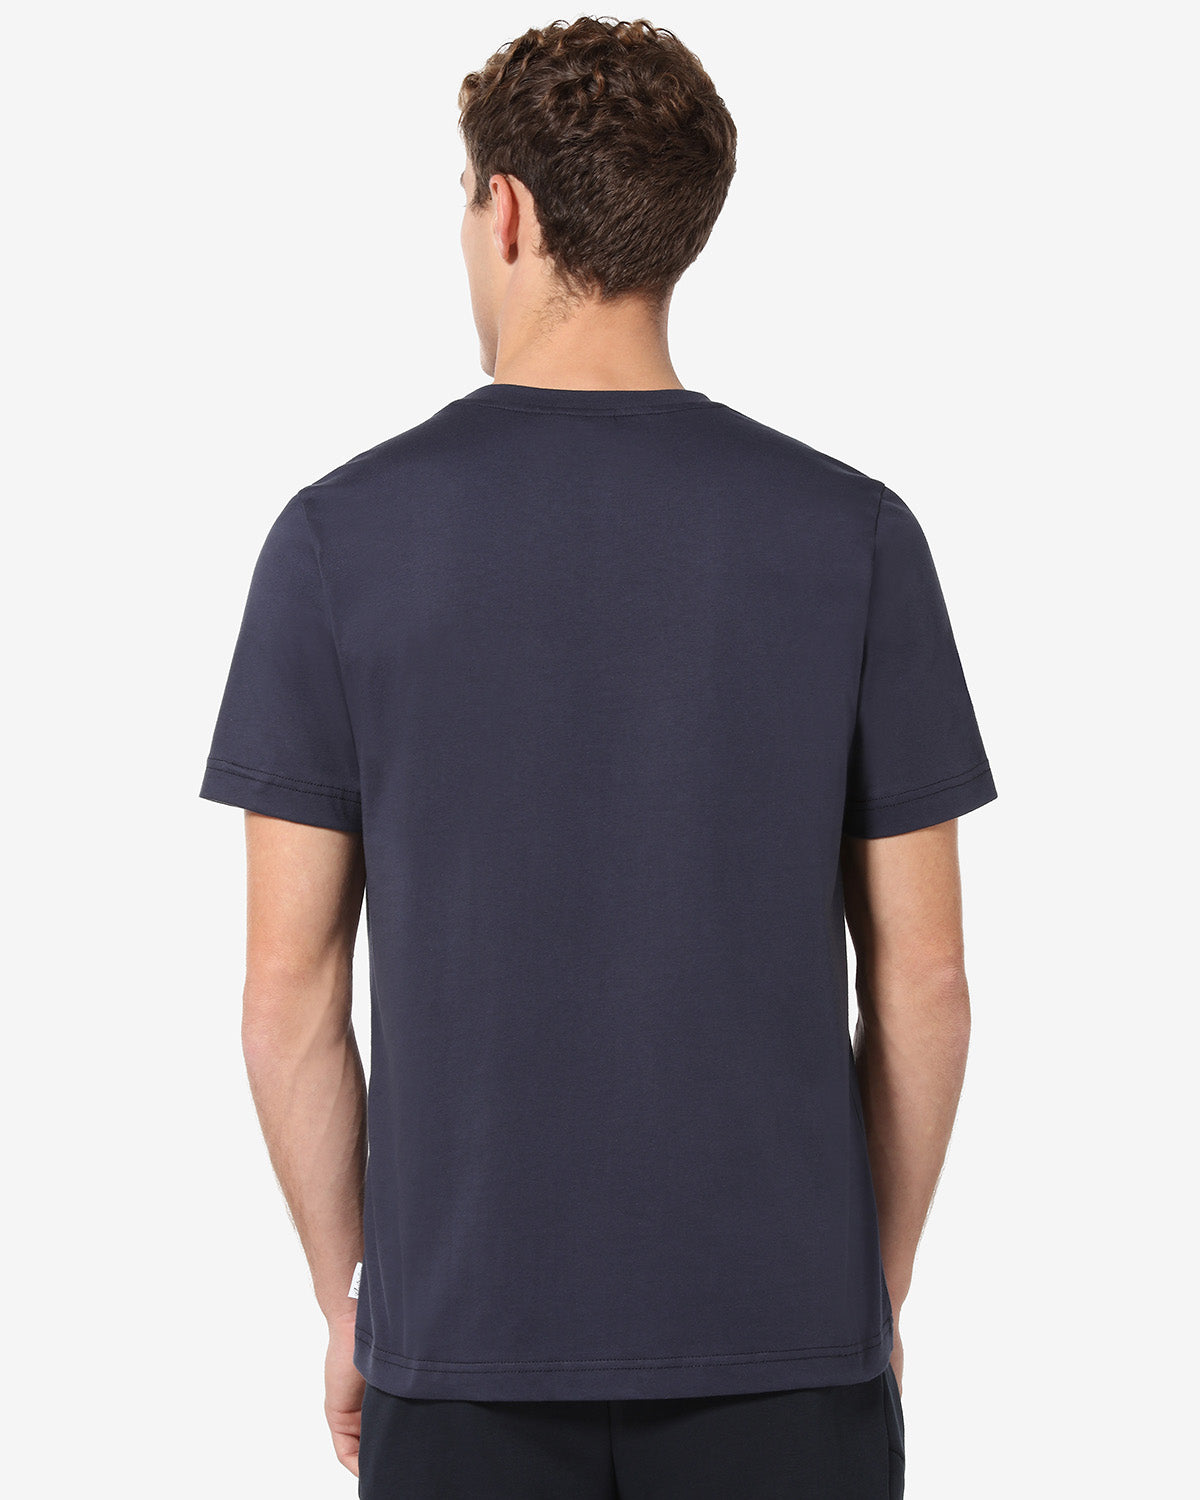 Tek-Fleece T-shirt: Australian Sportswear